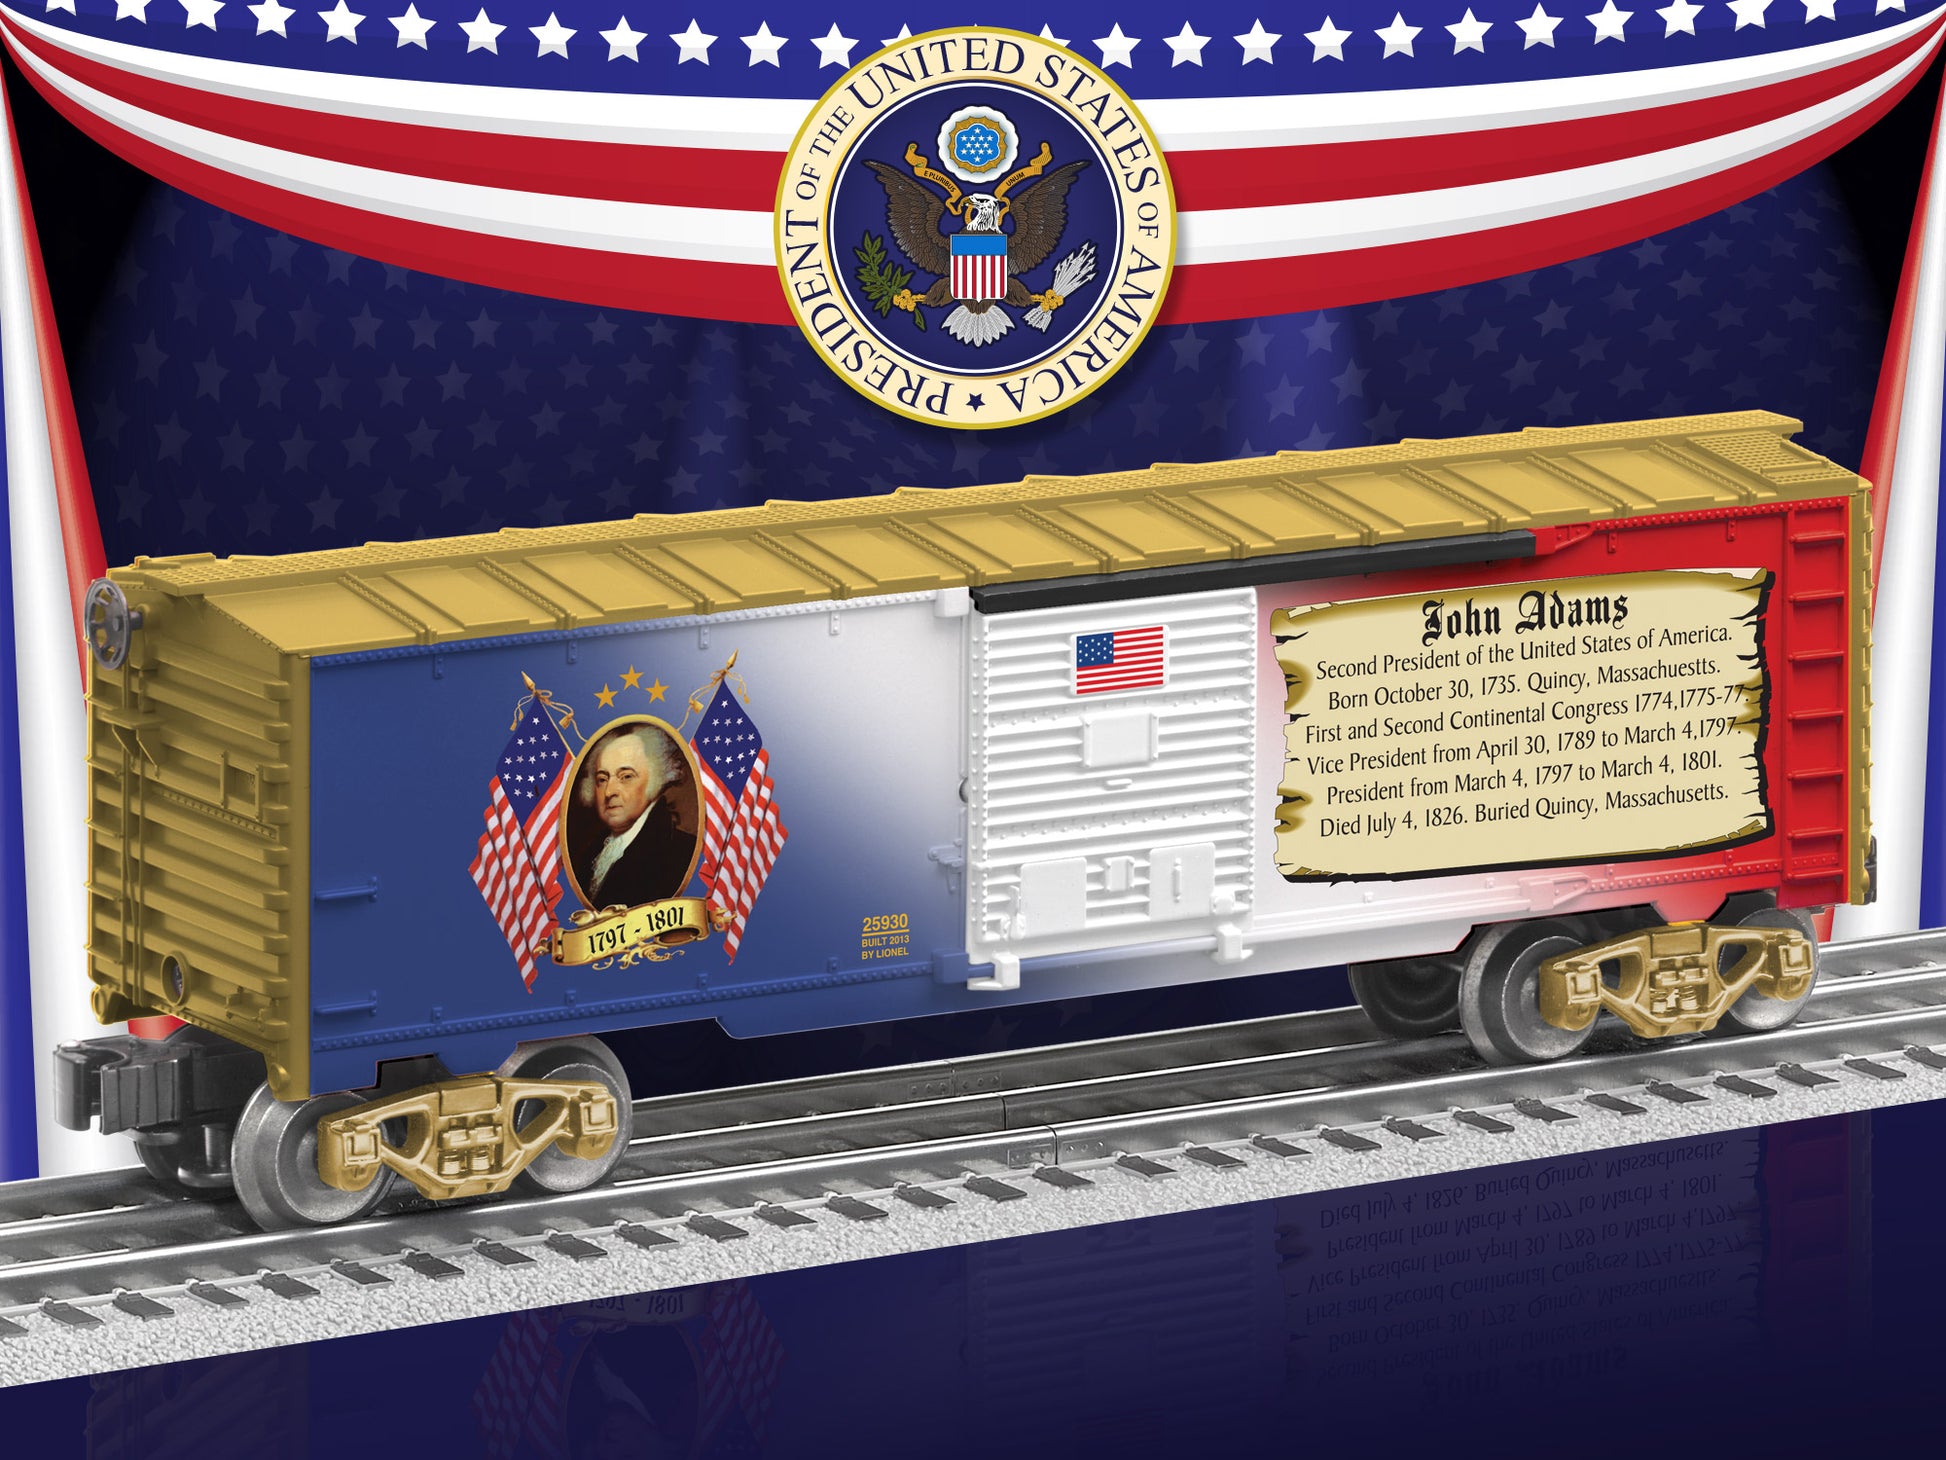 Lionel model train rail car O scale John Adams Presidential Boxcar.